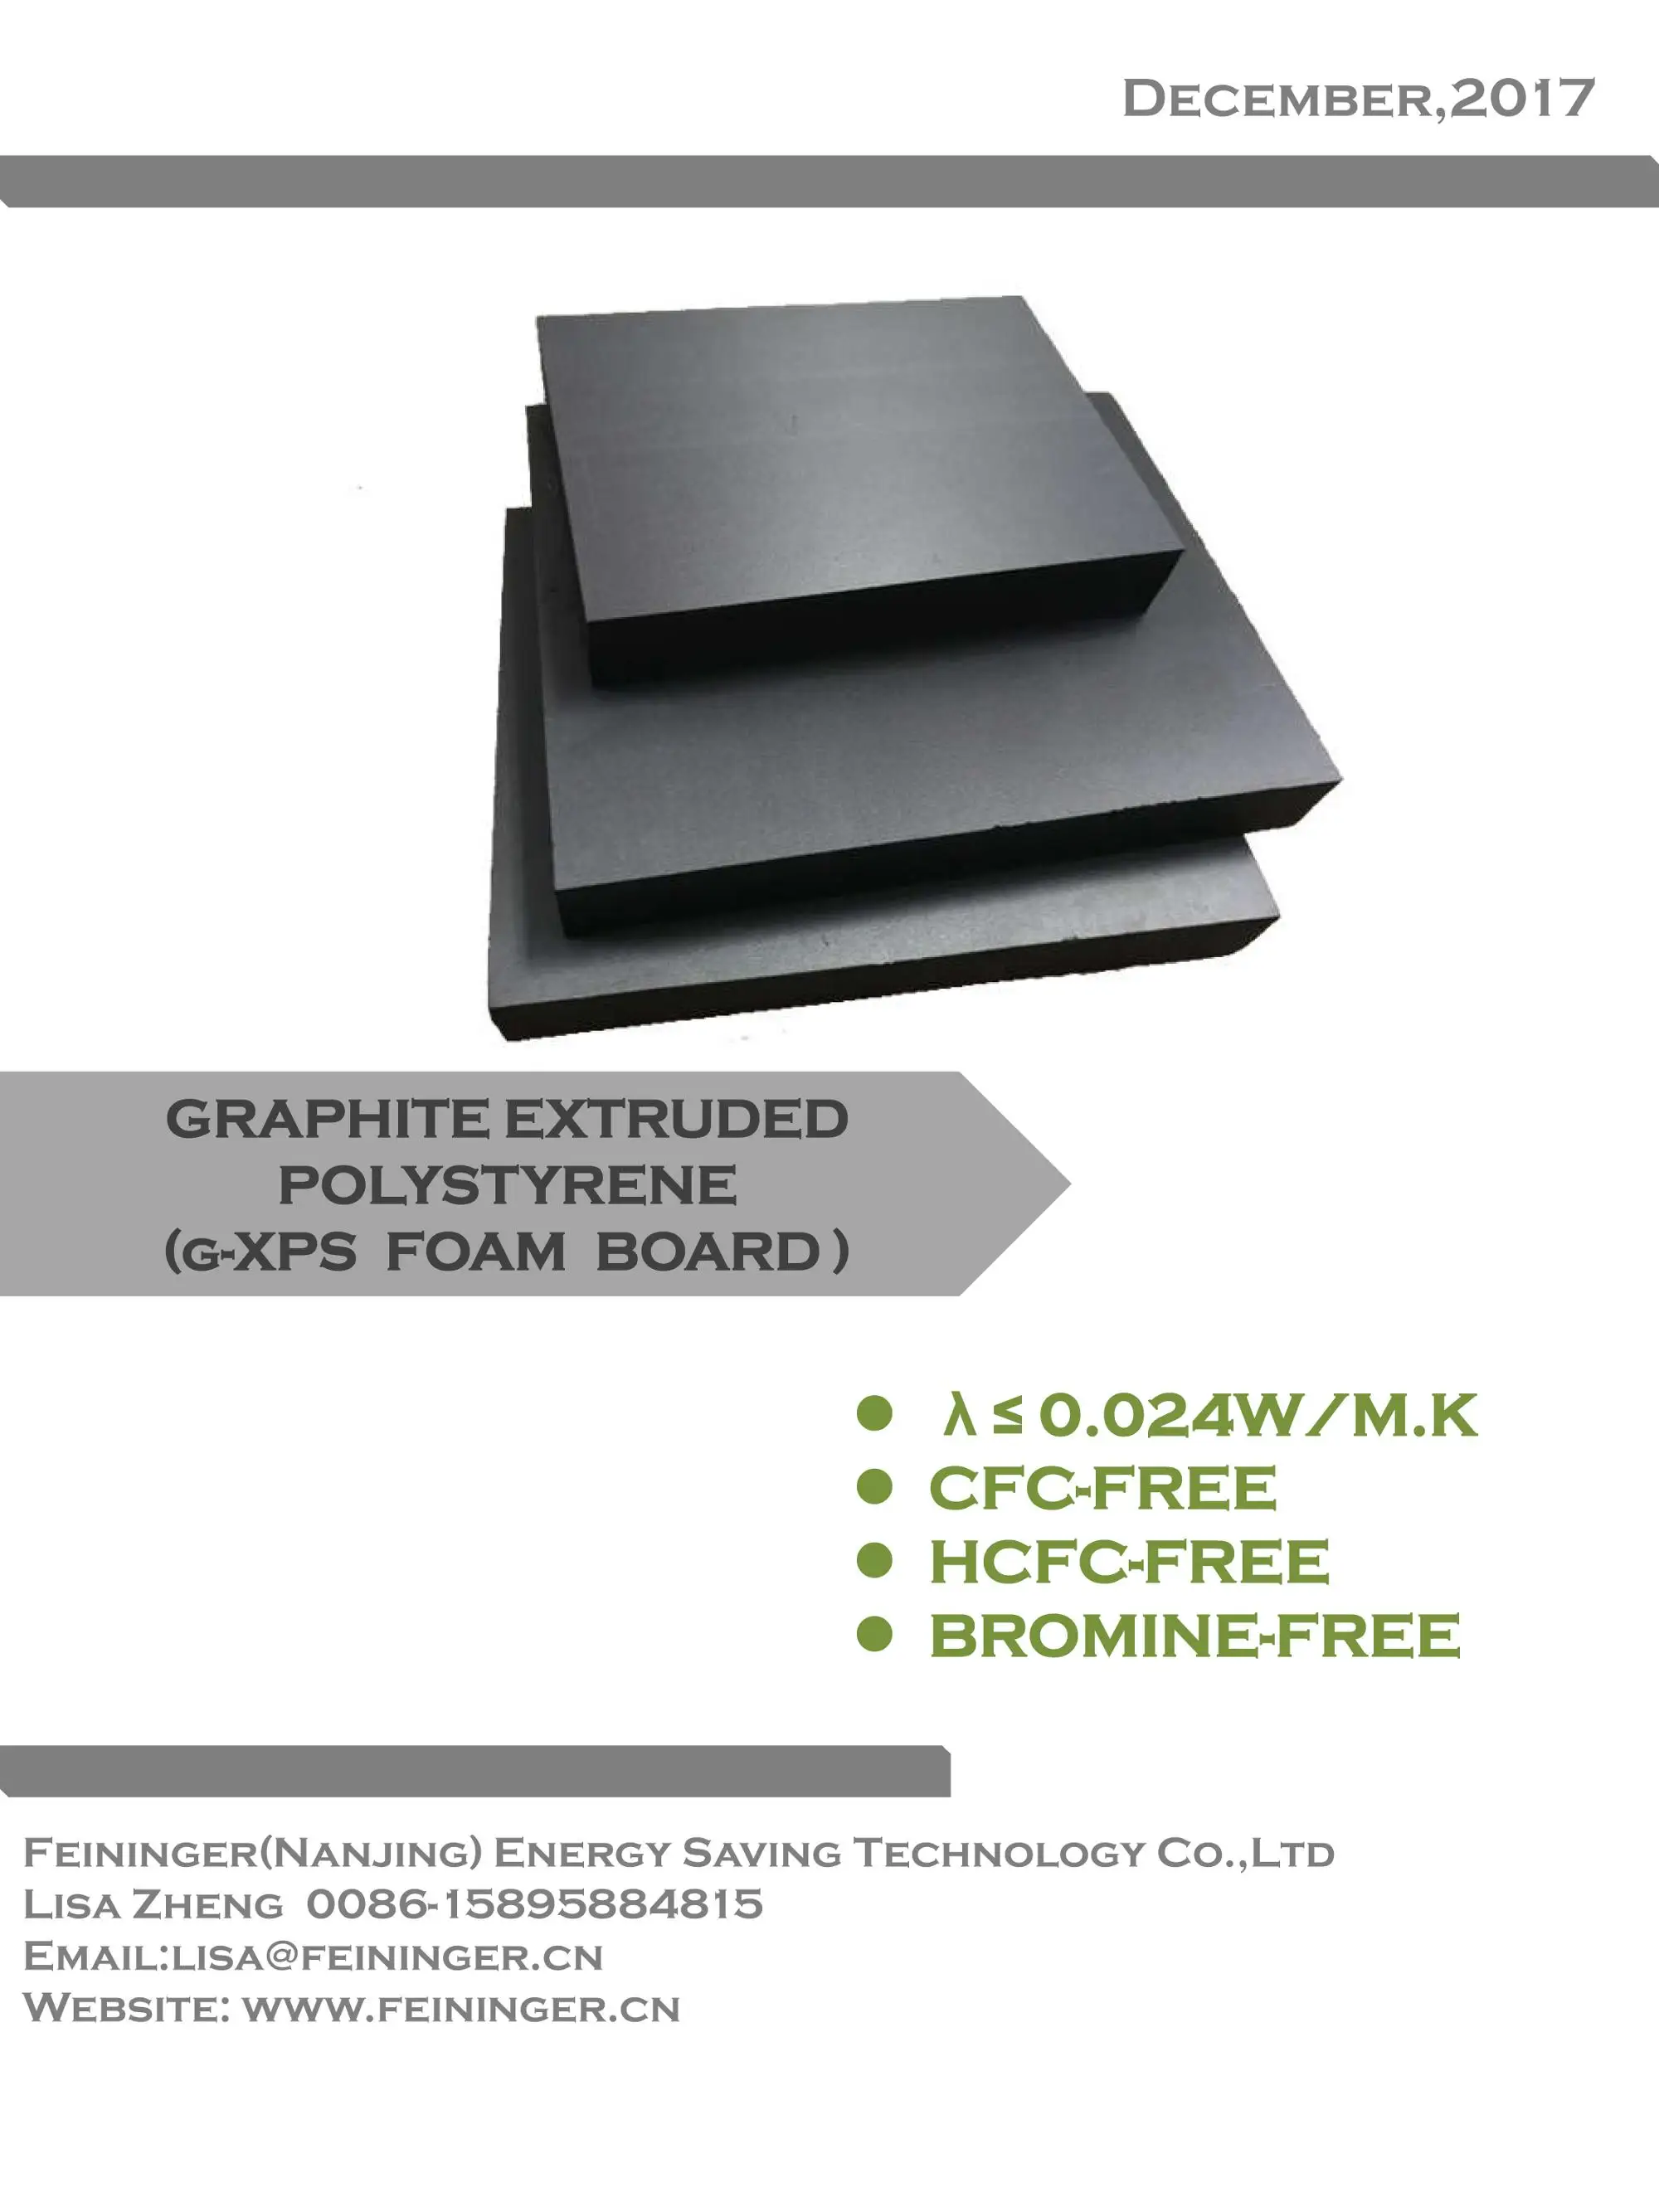 Why Choose Feininger for Your XPS Foam Board? - Feininger